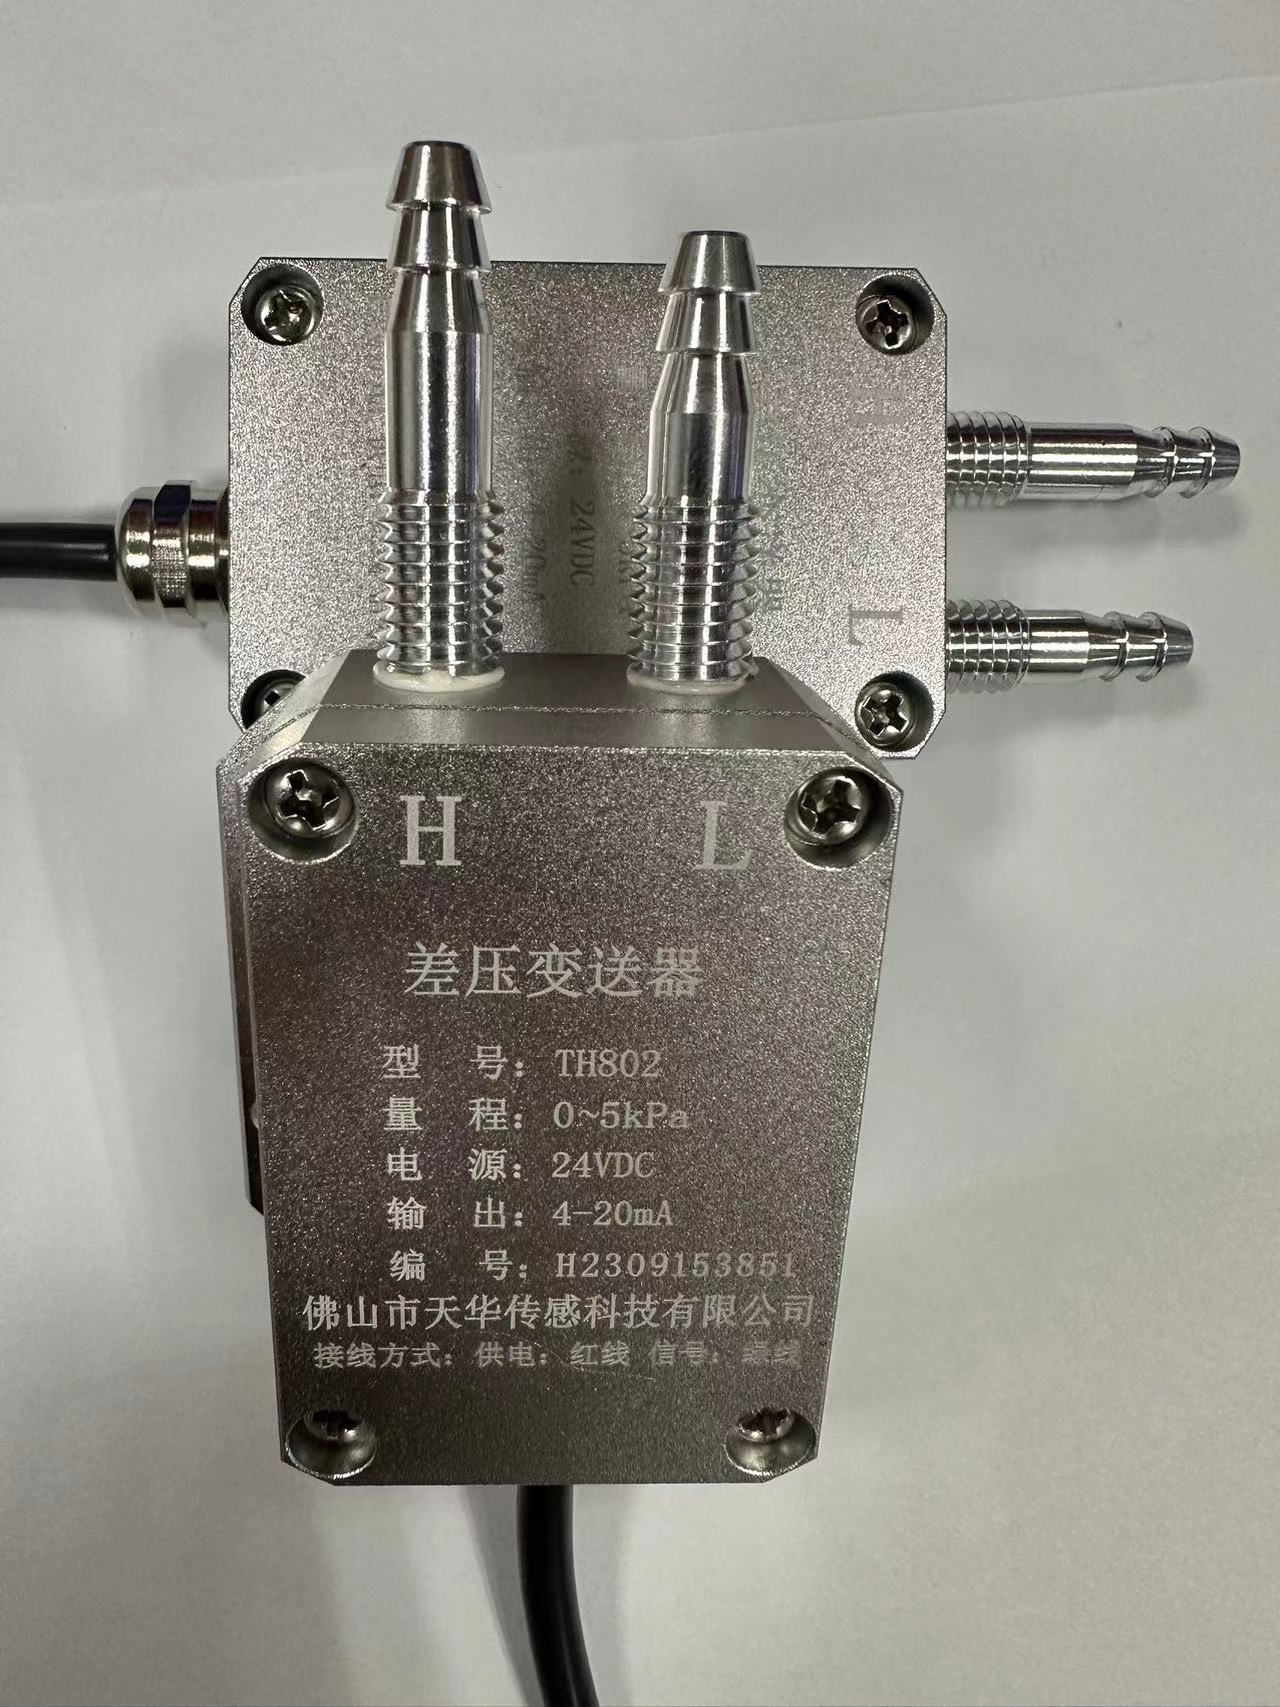 TH802天华管道负压传感器制造